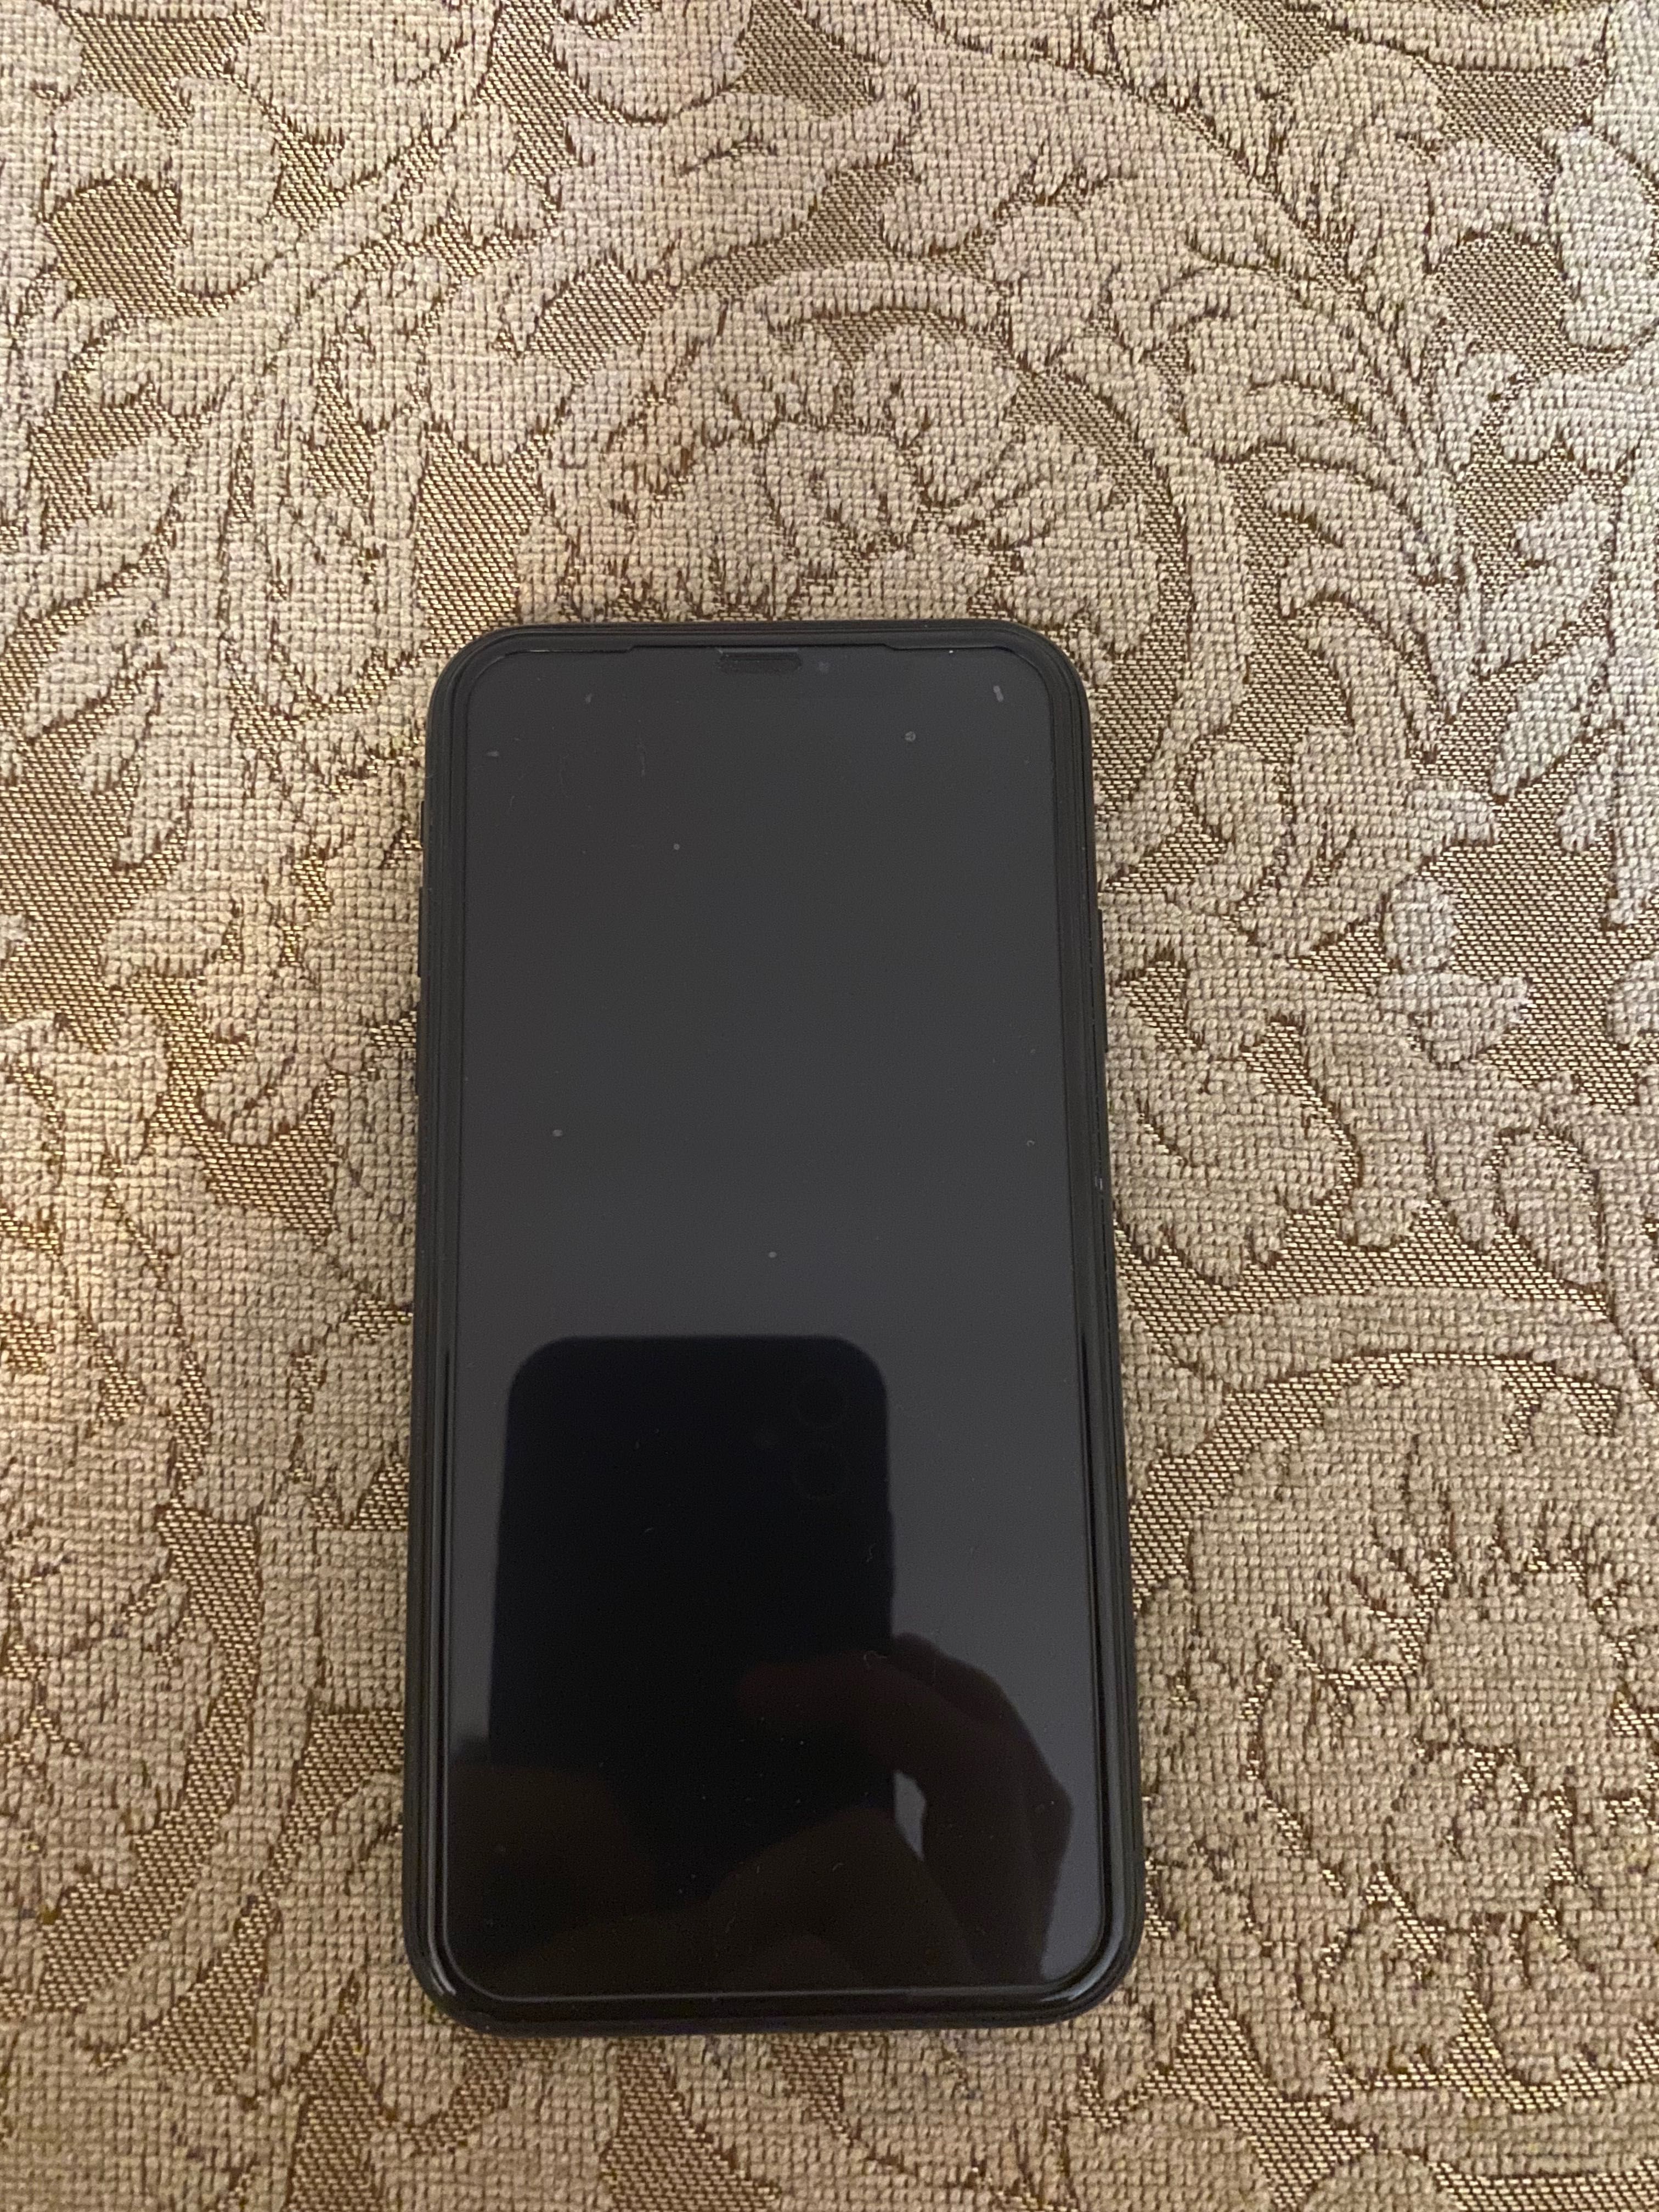 IPhone XR 64 GB чёрного цвета